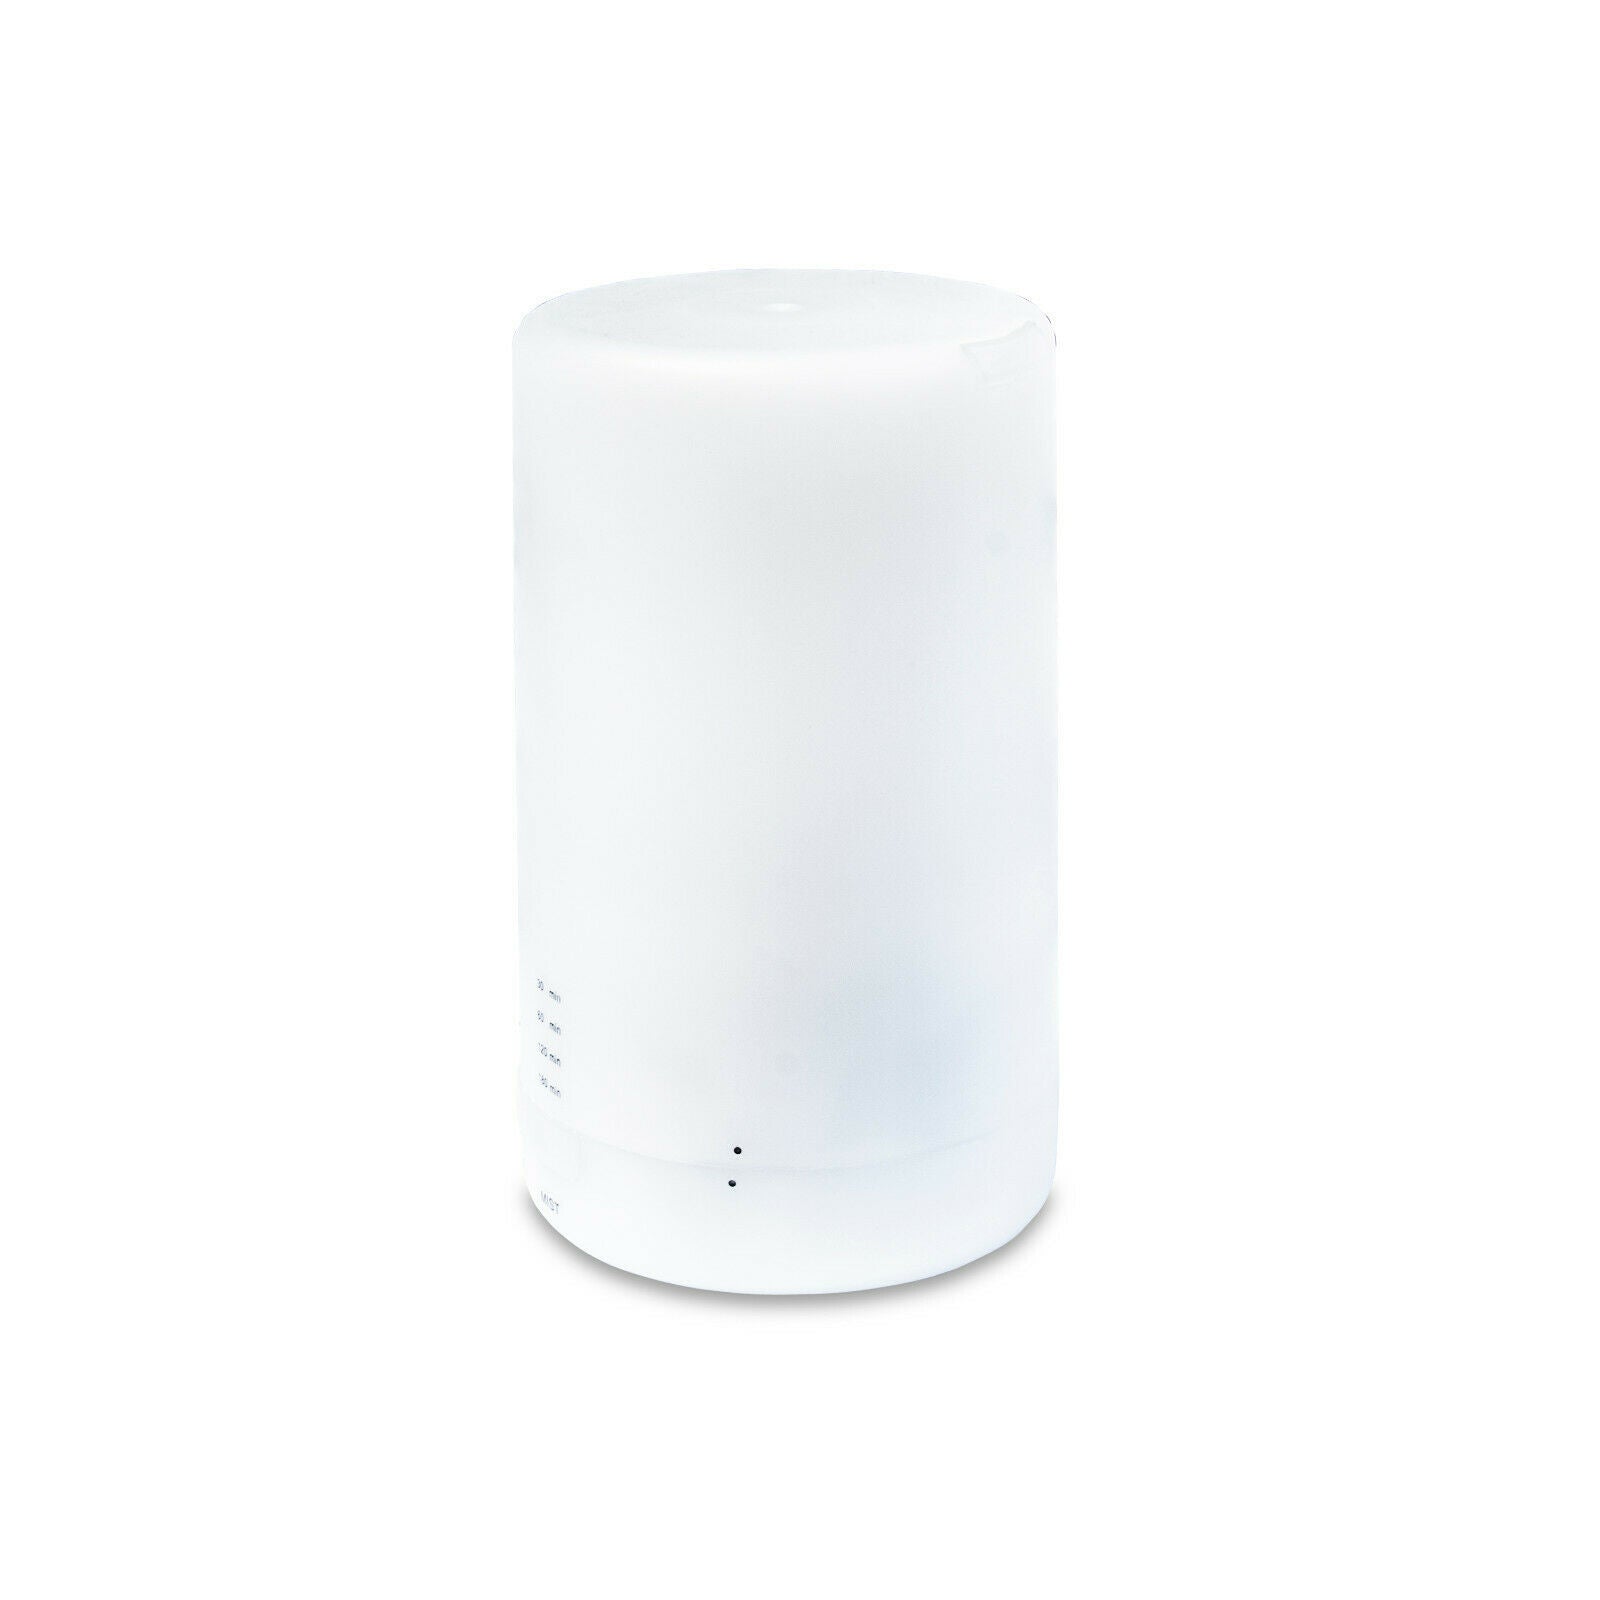 Cirago Aromatherapy White Essential Oil Diffuser (100 ML) - Diffuser with Timer